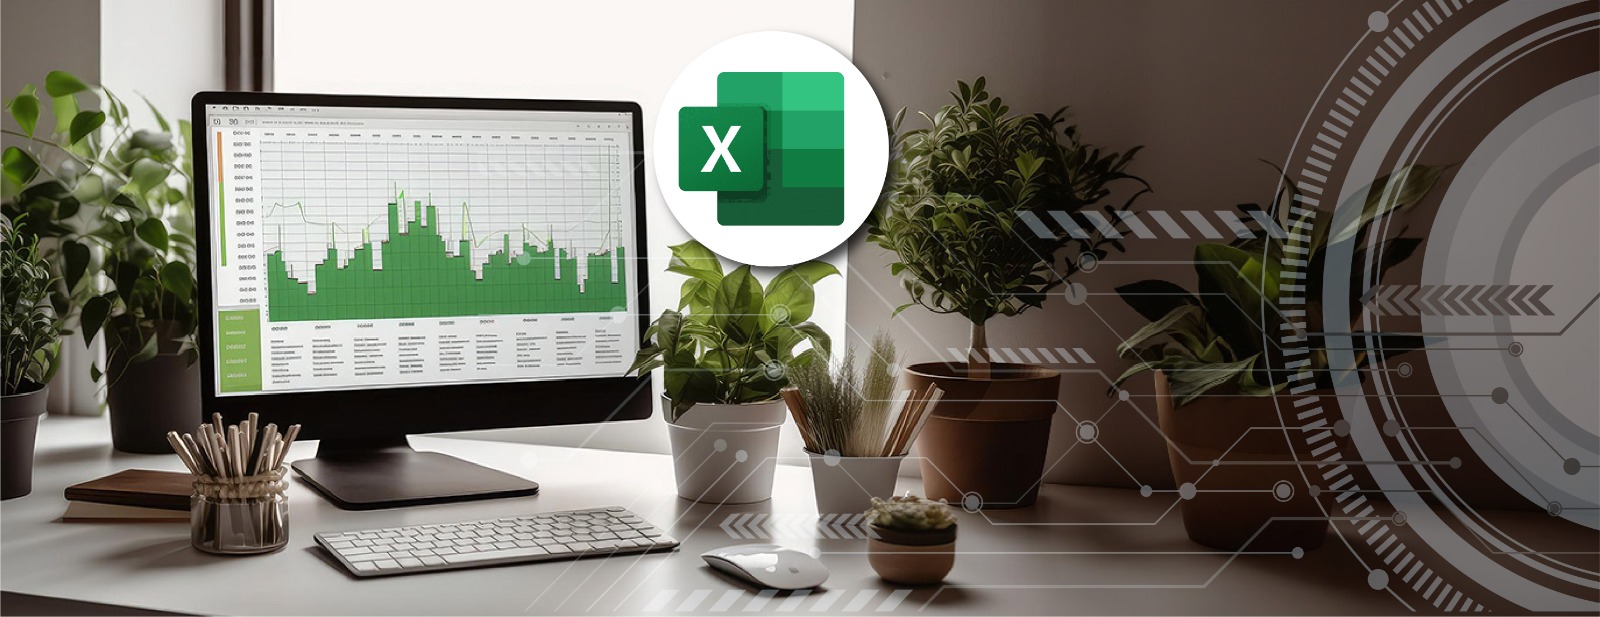 Excel Intermedio-Avanzado Especialitas en Software